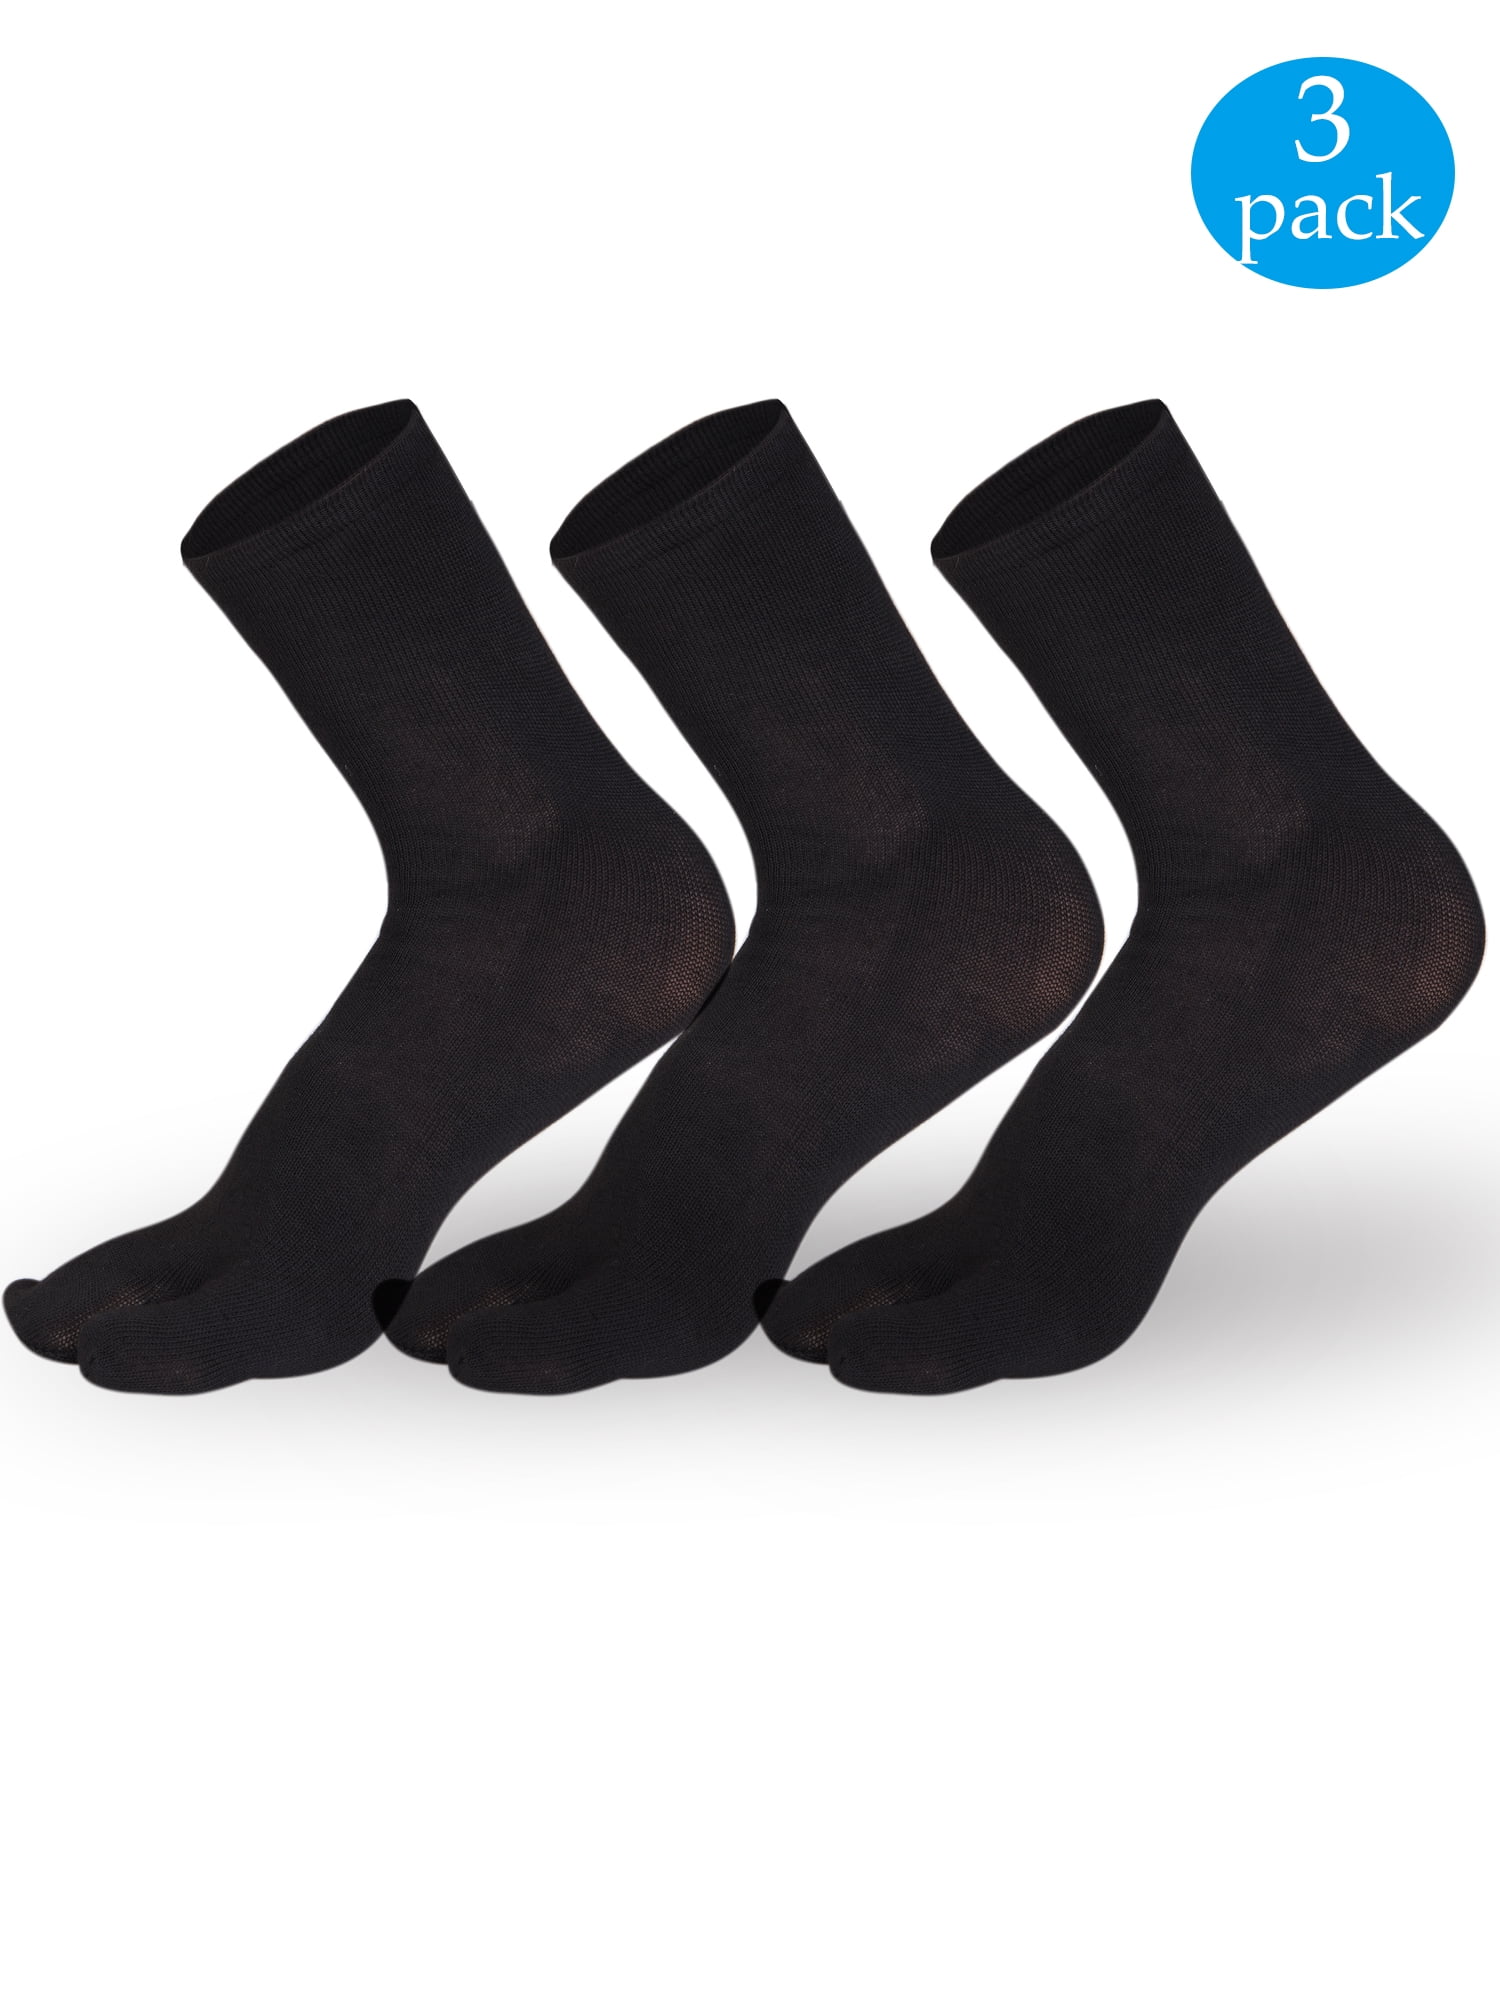 flip flop socks walmart